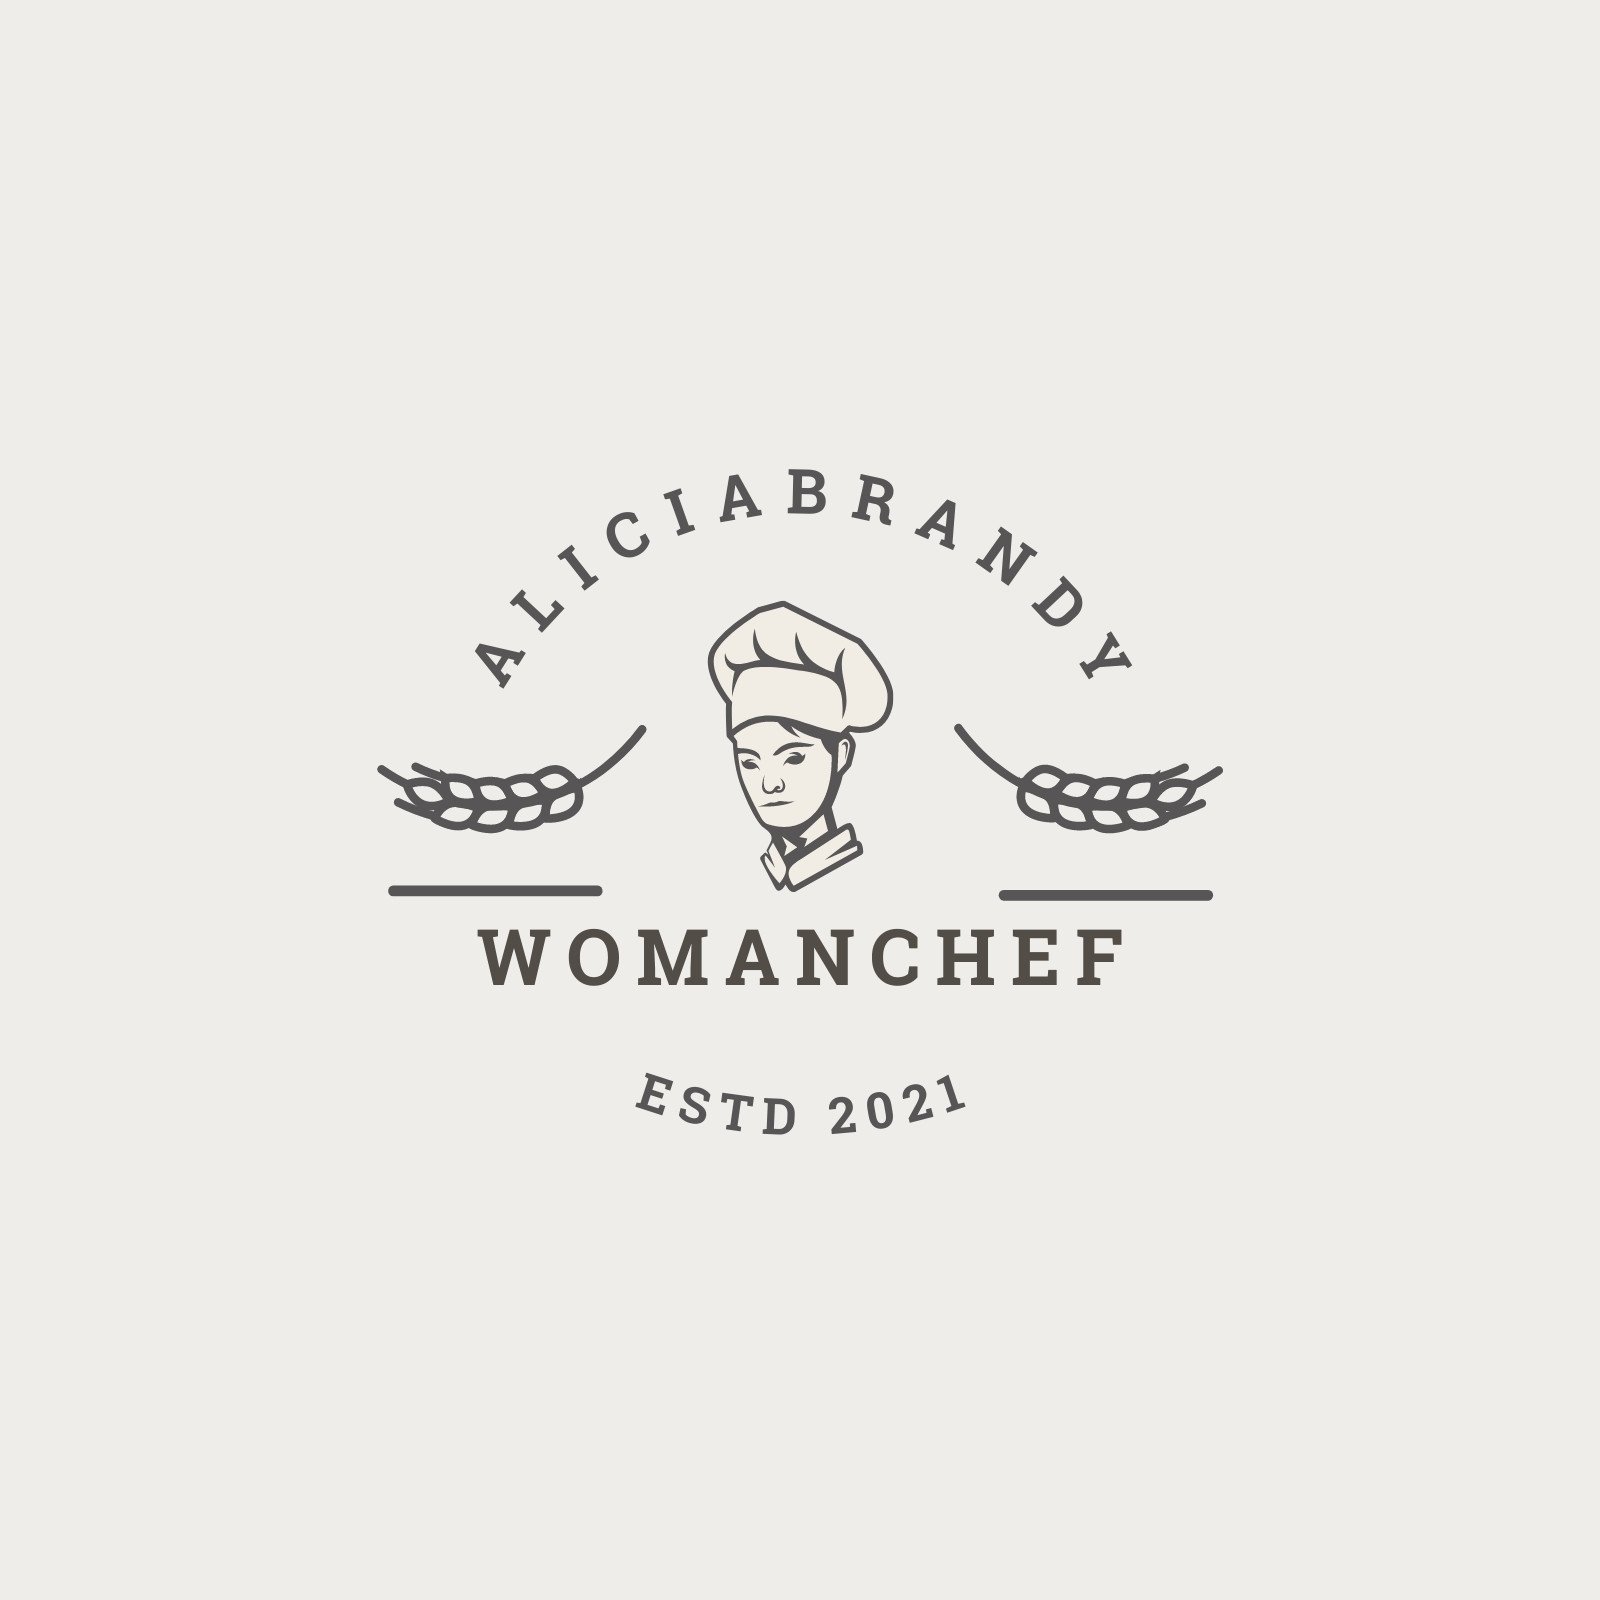 lady chef logo design ideas